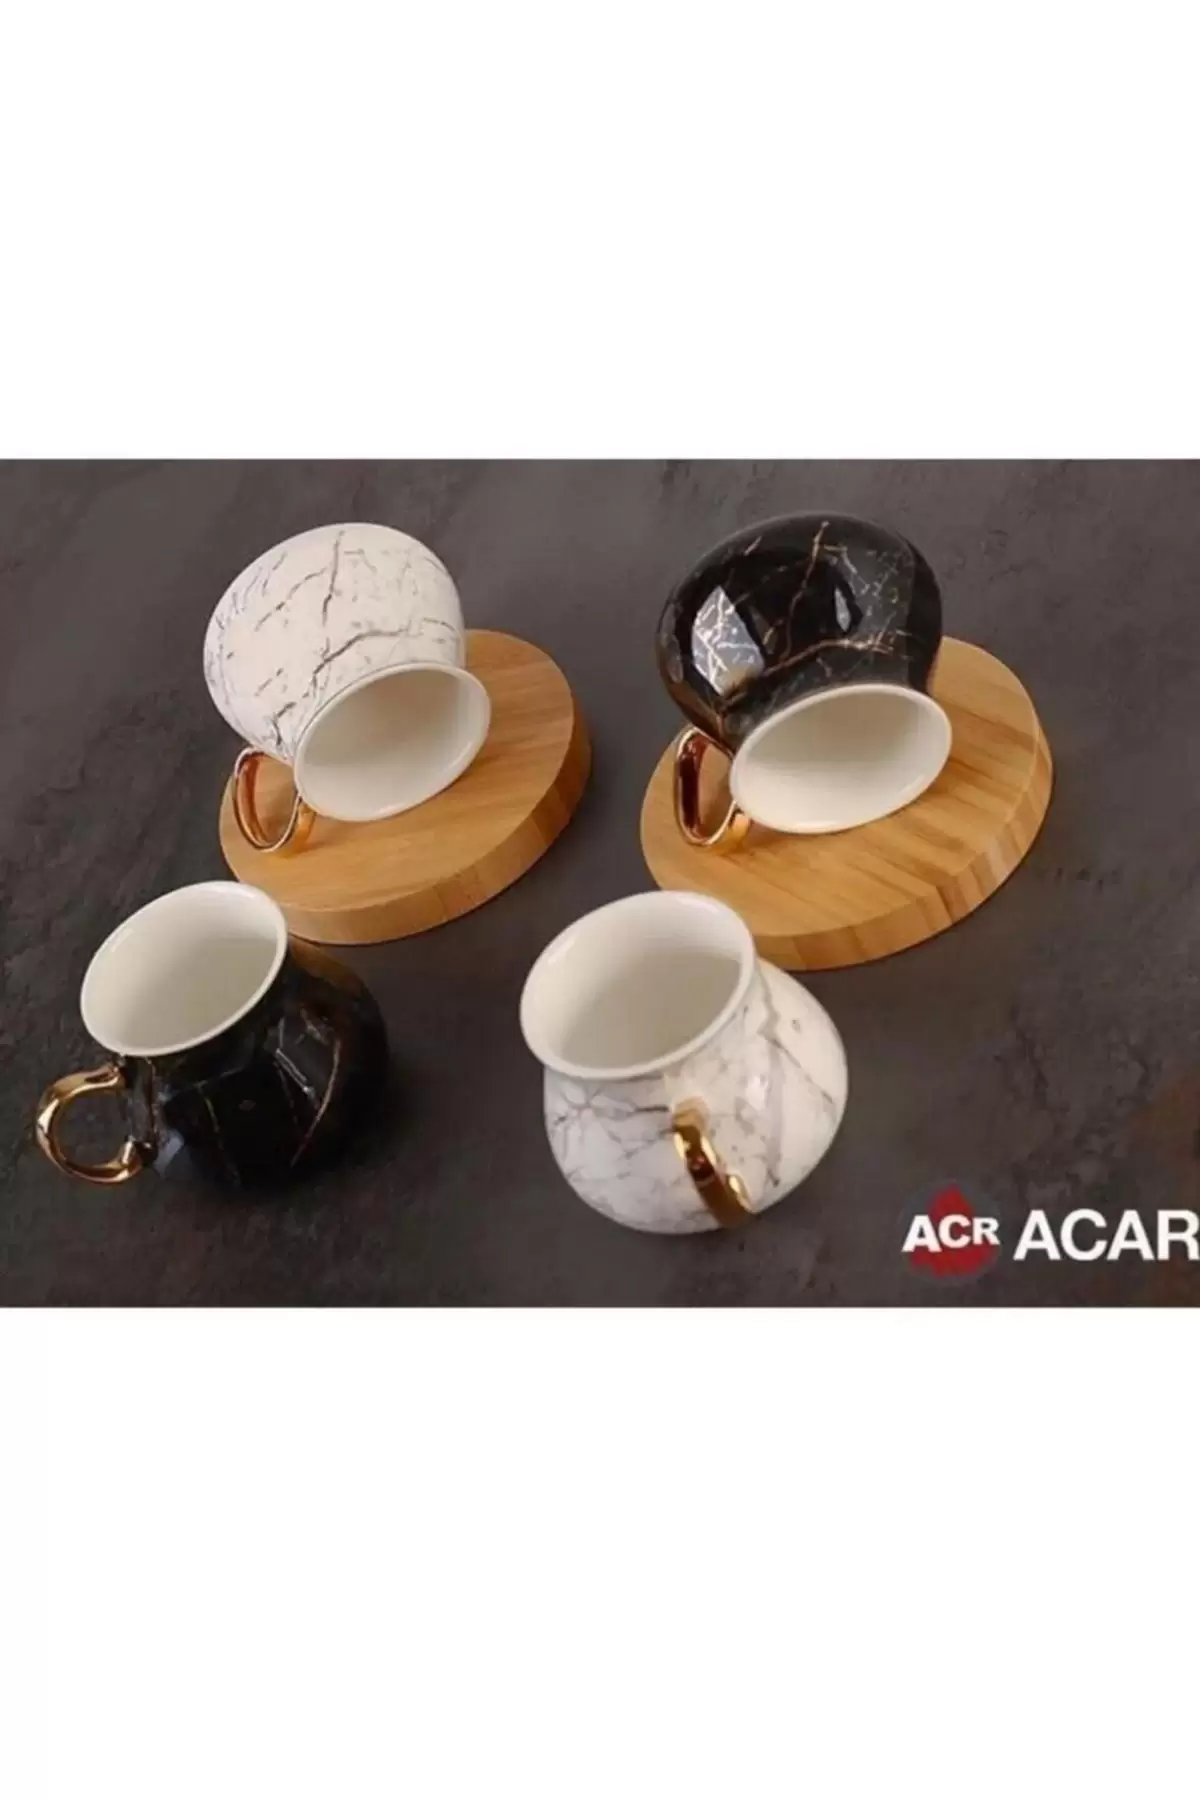 Acar KAI10590 Tekli Porselen Çay Fincanı